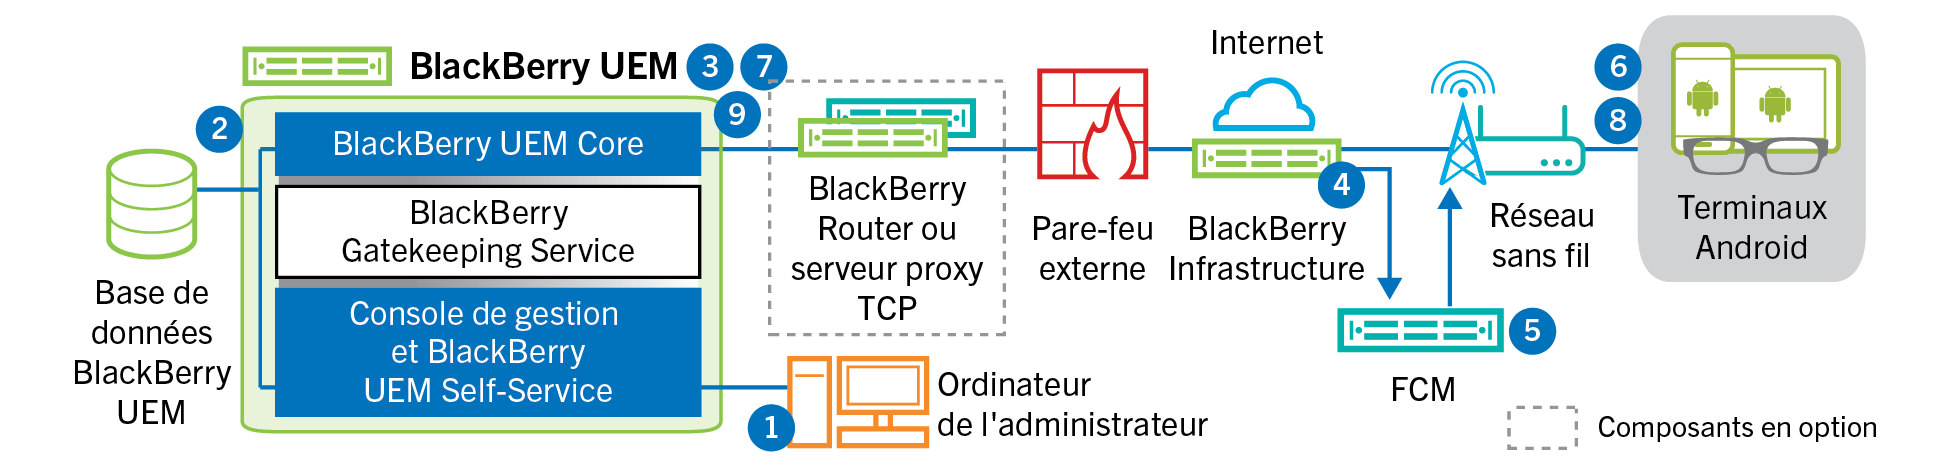 Schéma illustrant les étapes et les composants mentionnés dans le flux de données suivant.